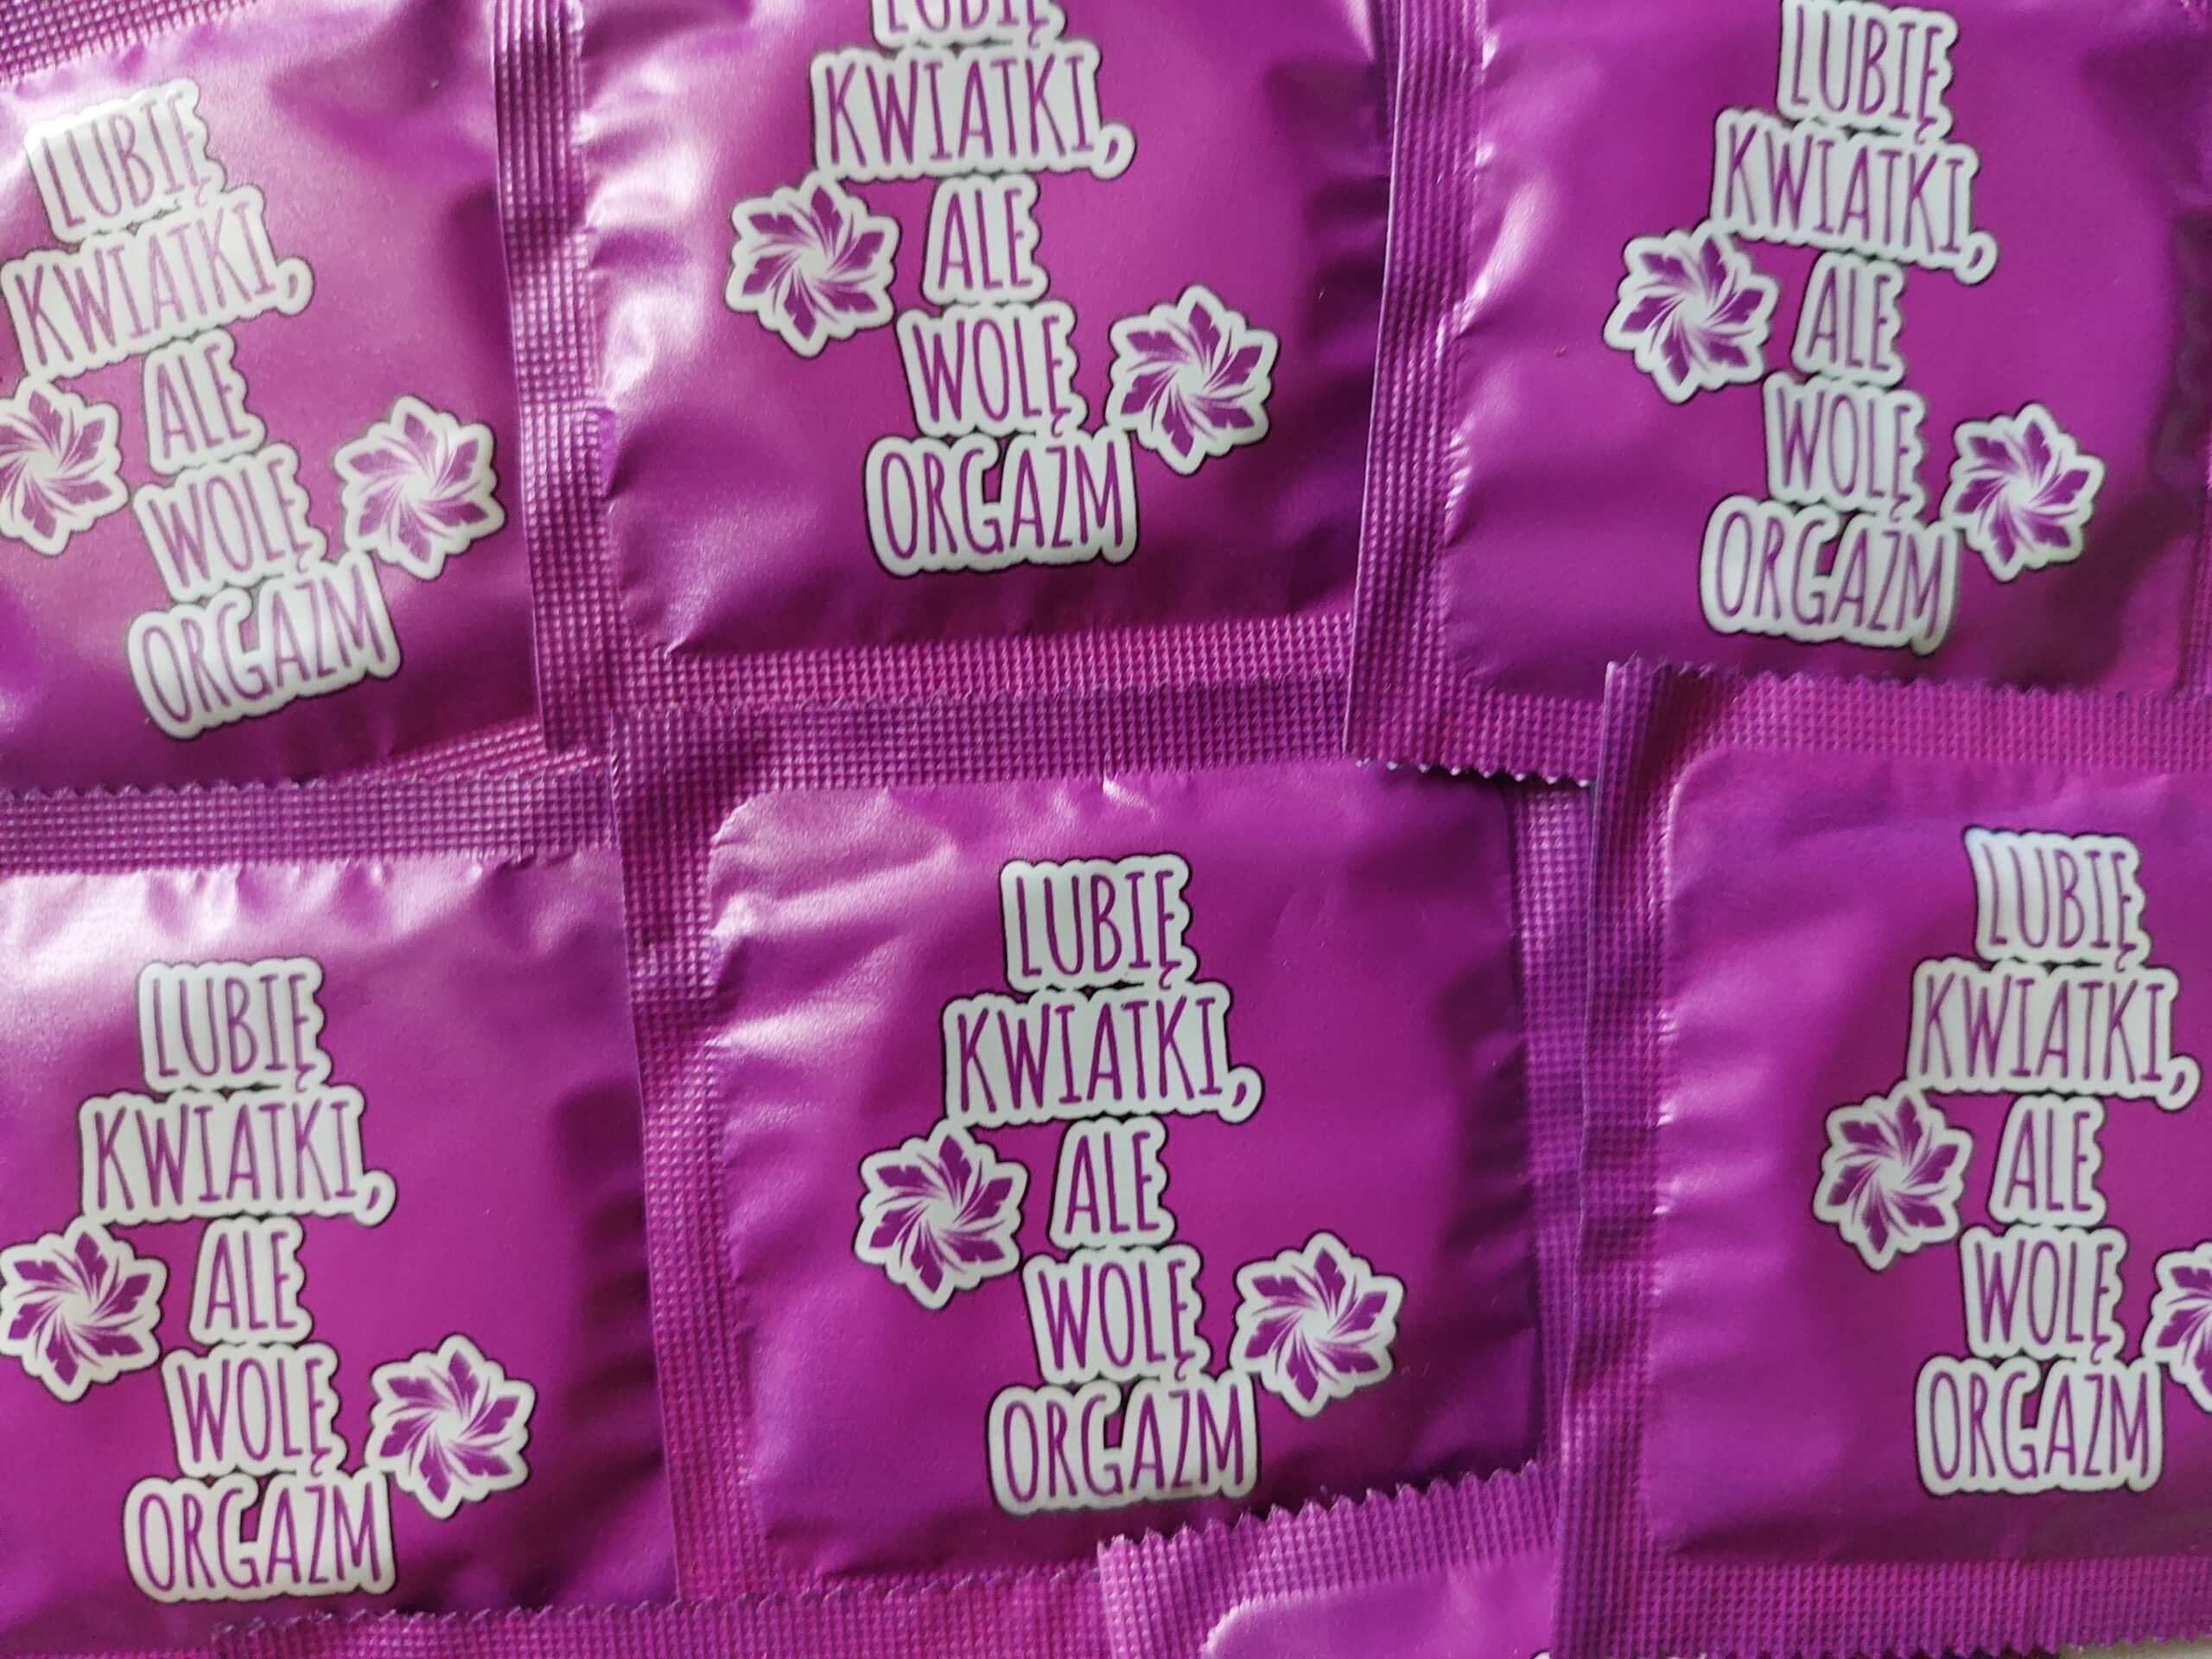 Prezerwatywy z nadrukiem LUBIĘ KWIATKI, ALE WOLĘ ORGAZM